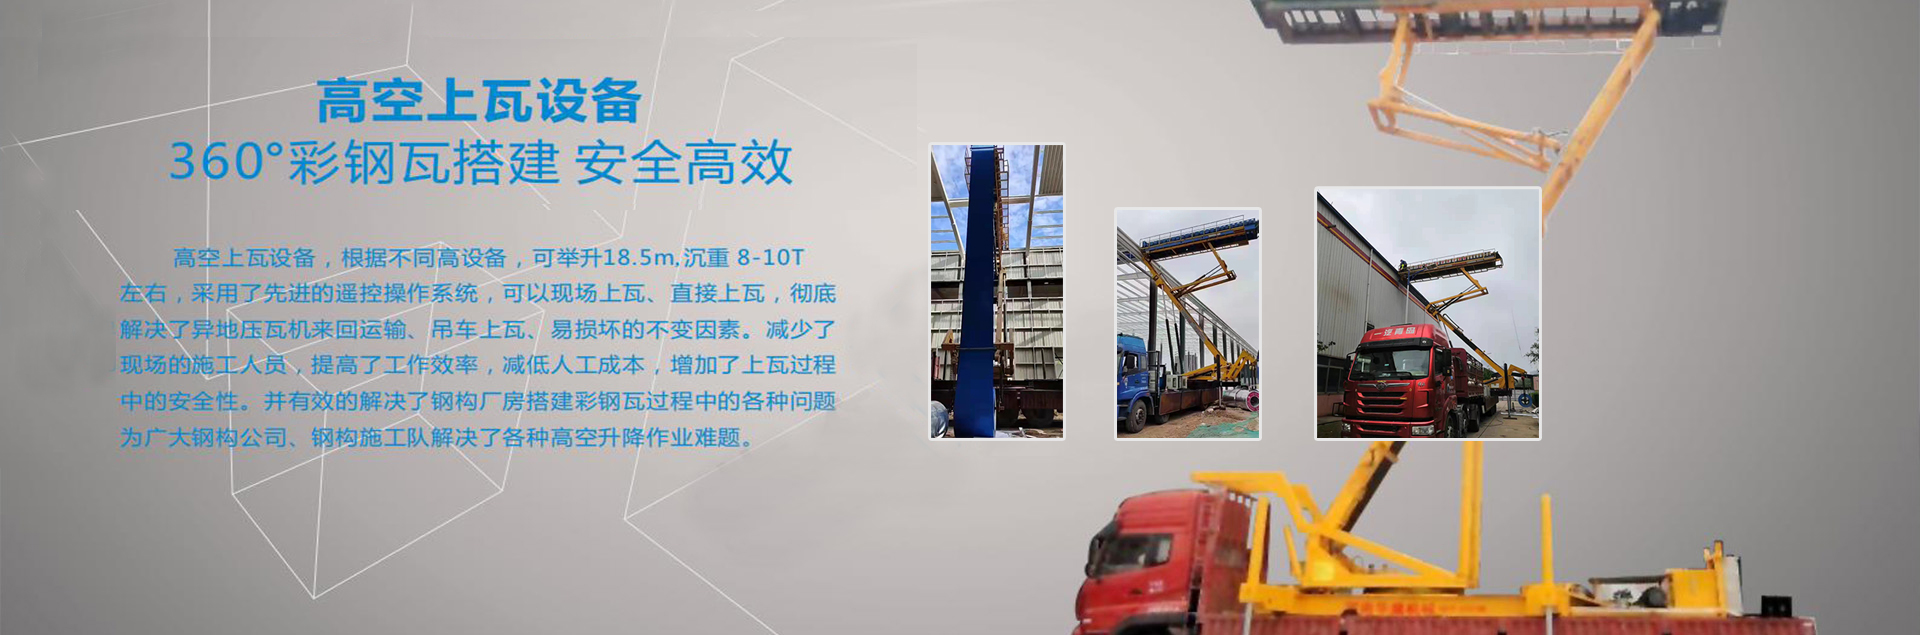 陕西精工钢结构有限责任公司